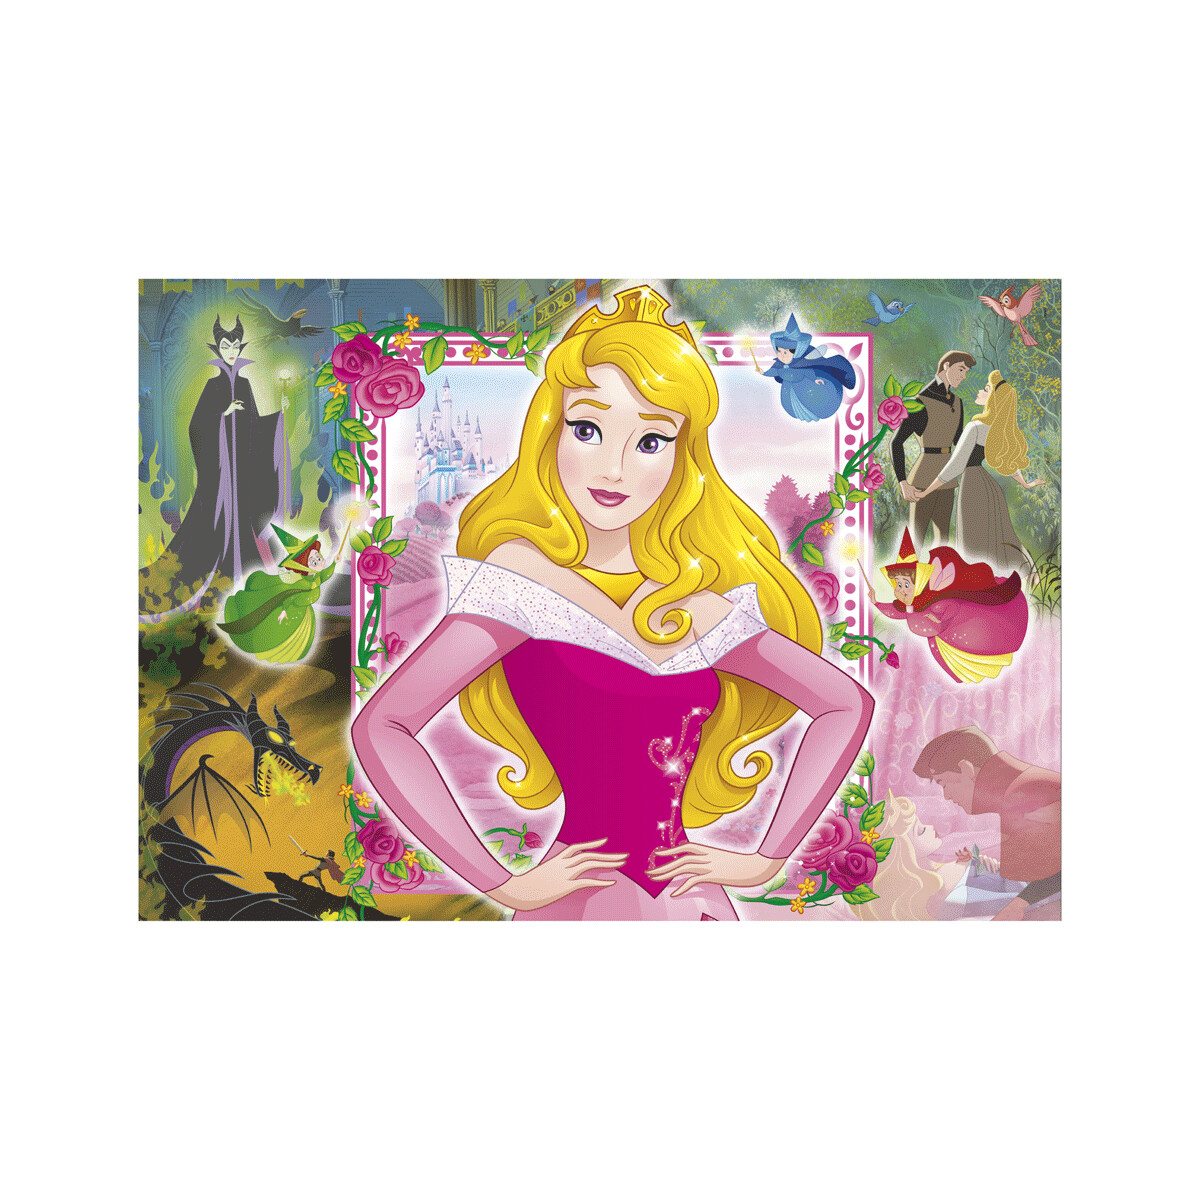 Clementoni - 25211 - puzzle 3x48 disney princess 32 x 22 cm - CLEMENTONI, DISNEY PRINCESS